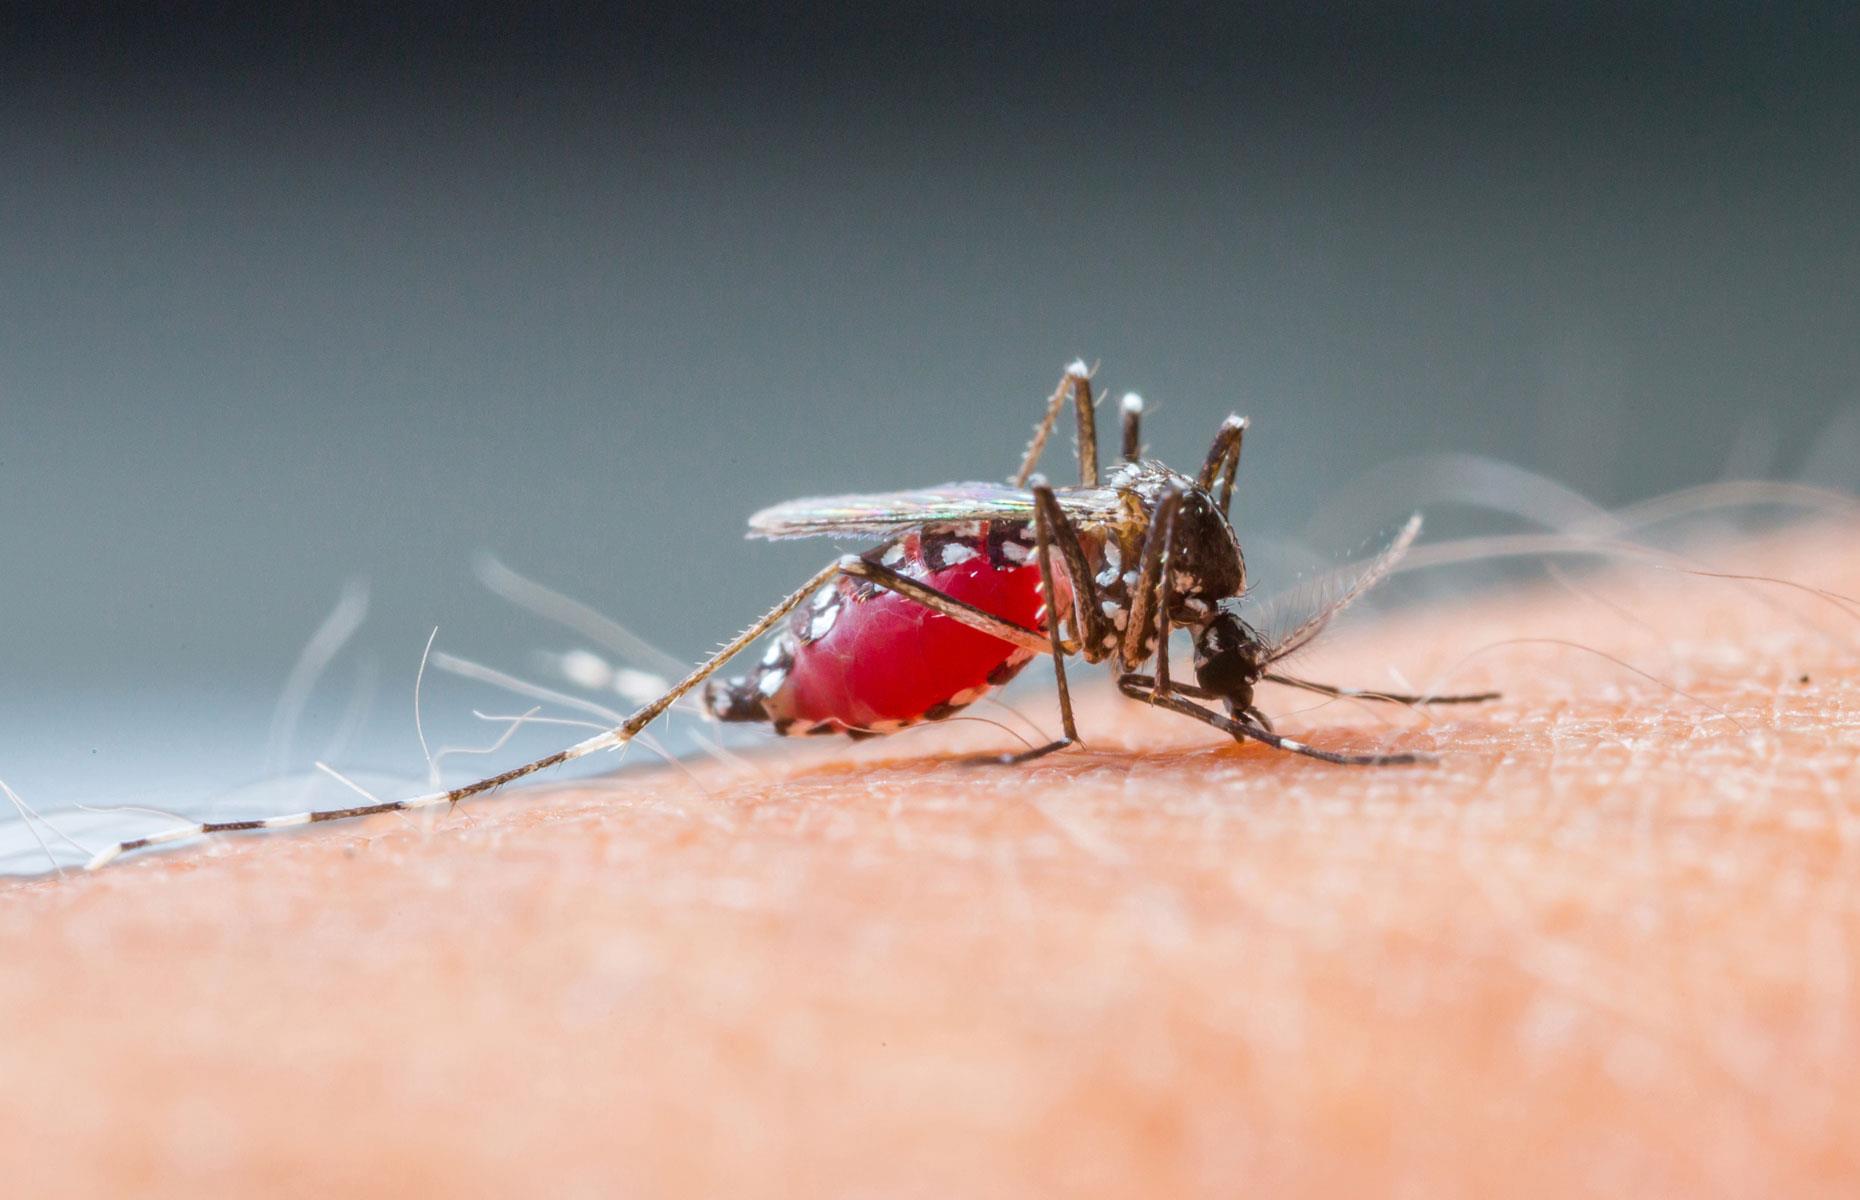 Малярия животное. Малярийный Москит. Комар Денге.